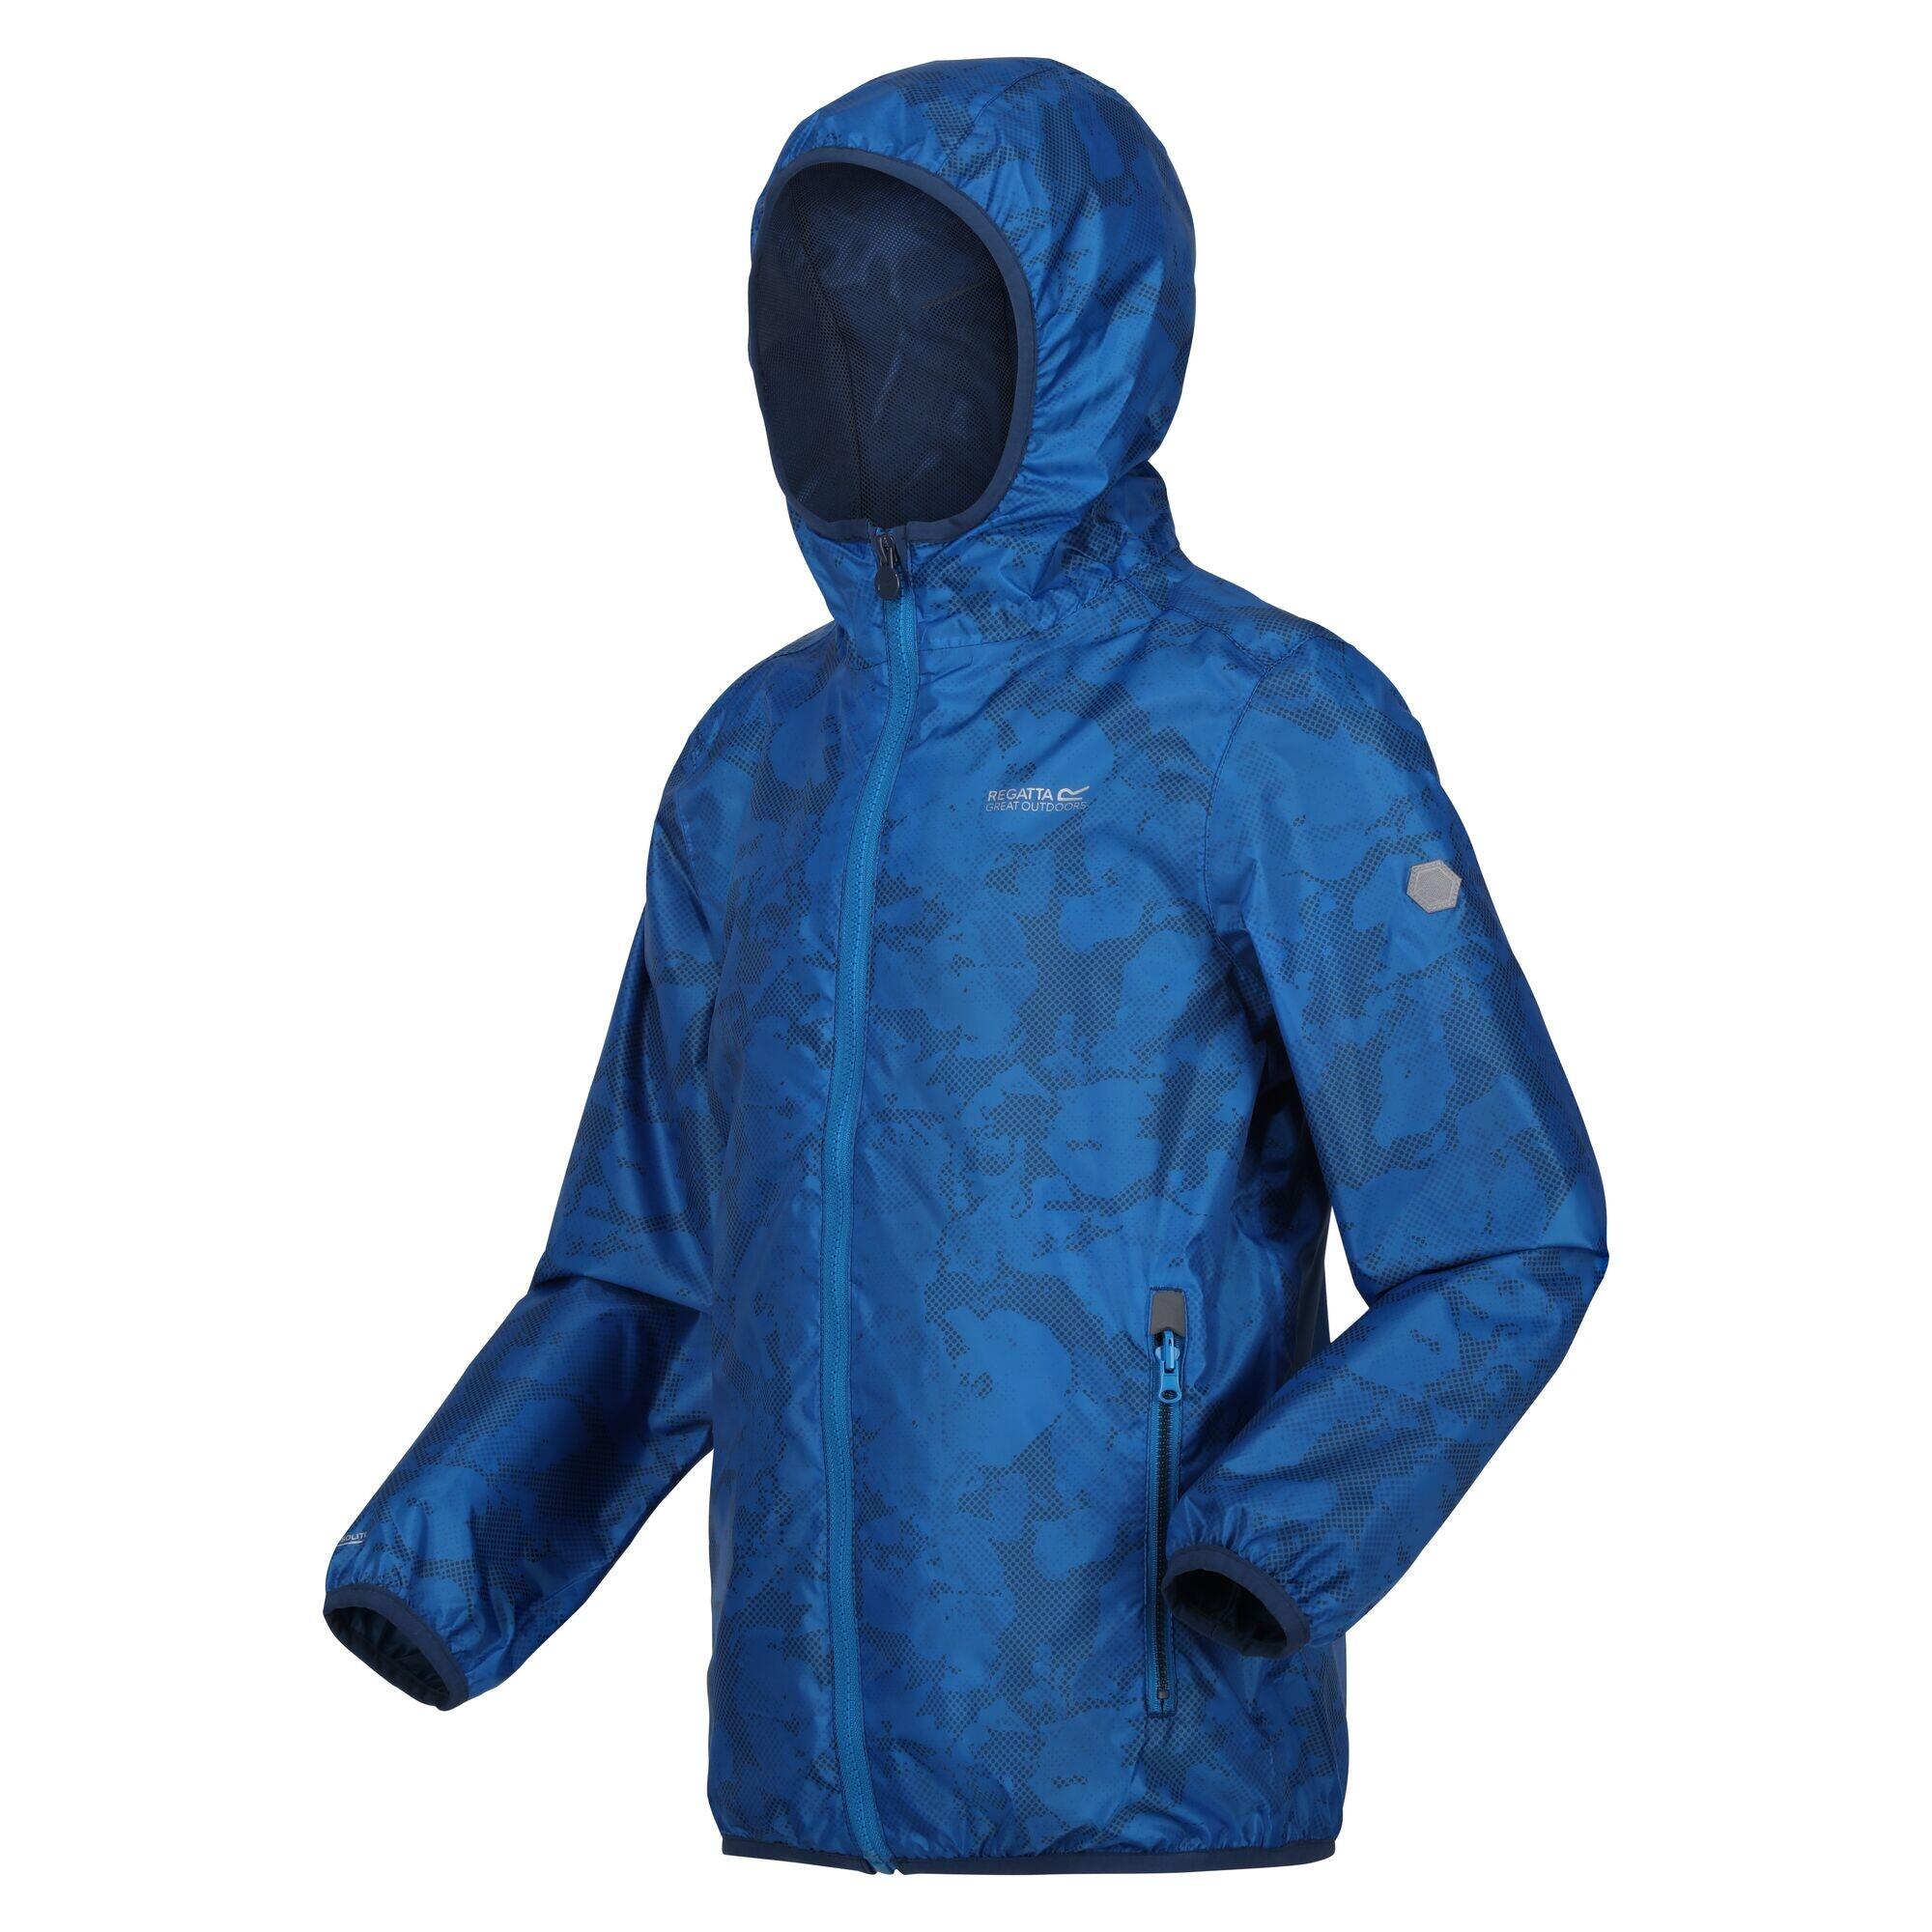 Childrens/Kids Lever Printed Packaway Waterproof Jacket (Indigo Blue) 4/5